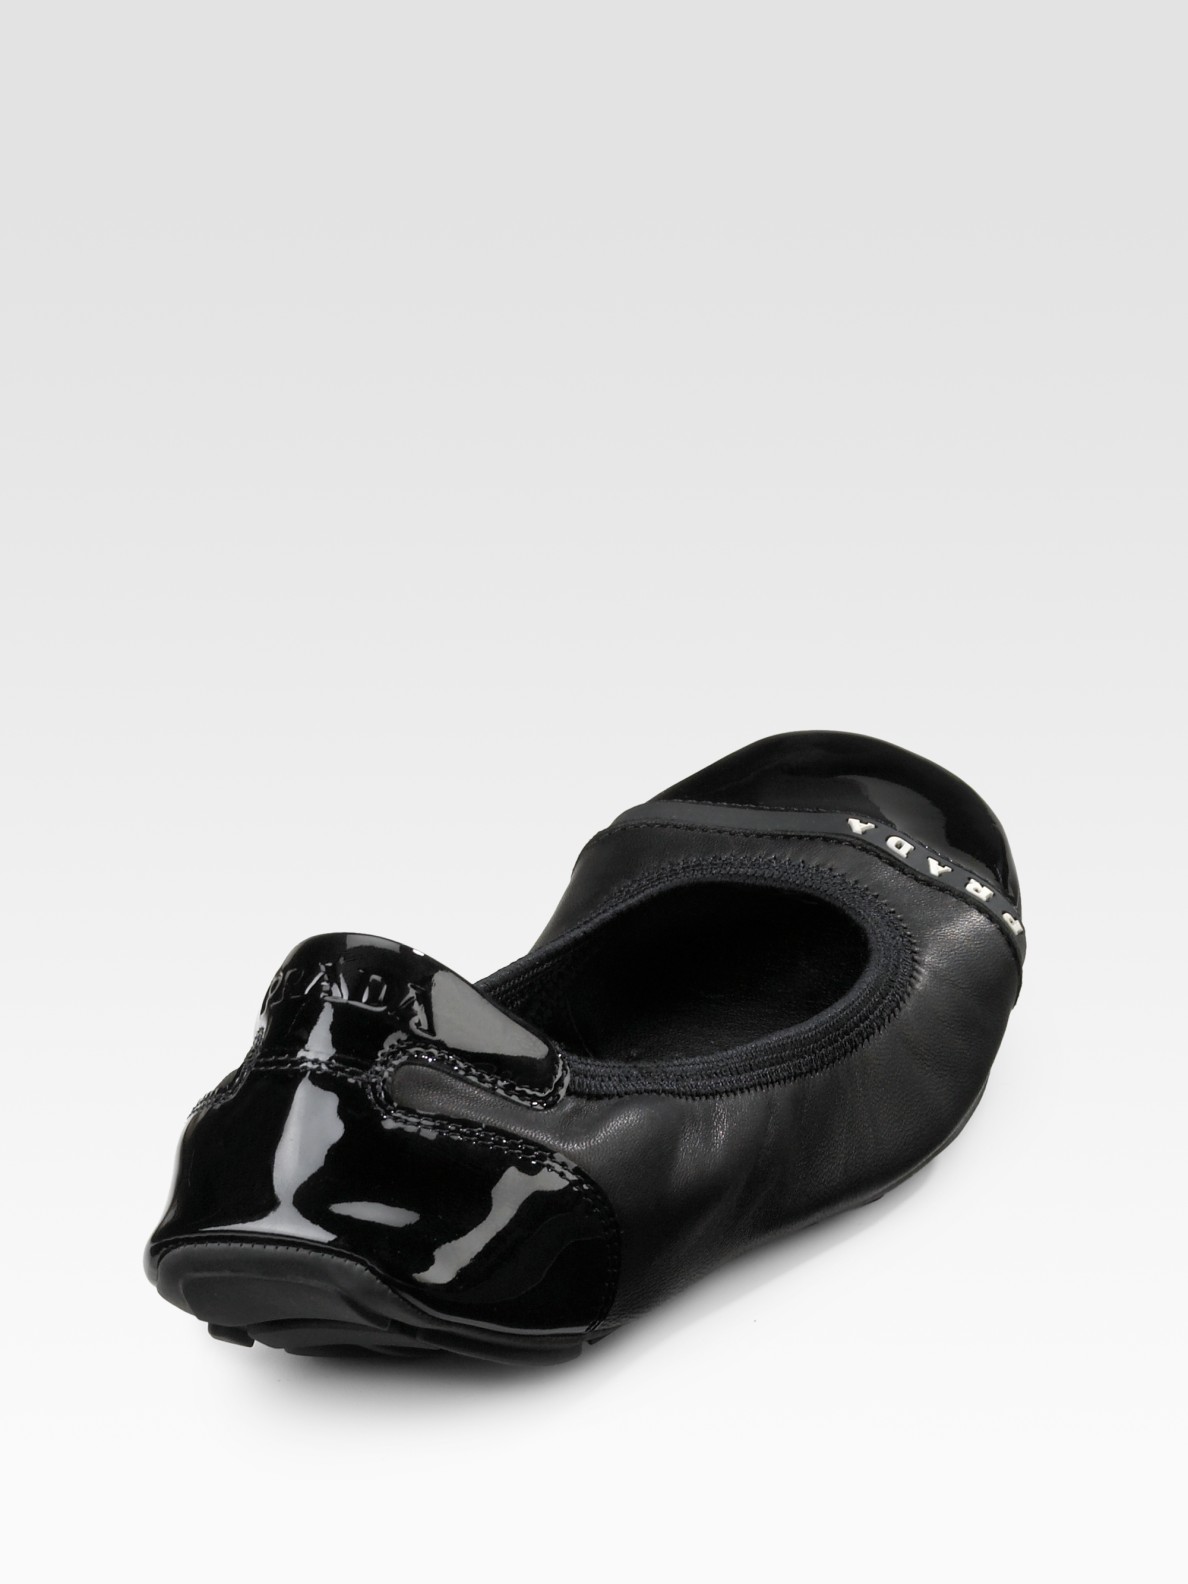 prada ballet shoes